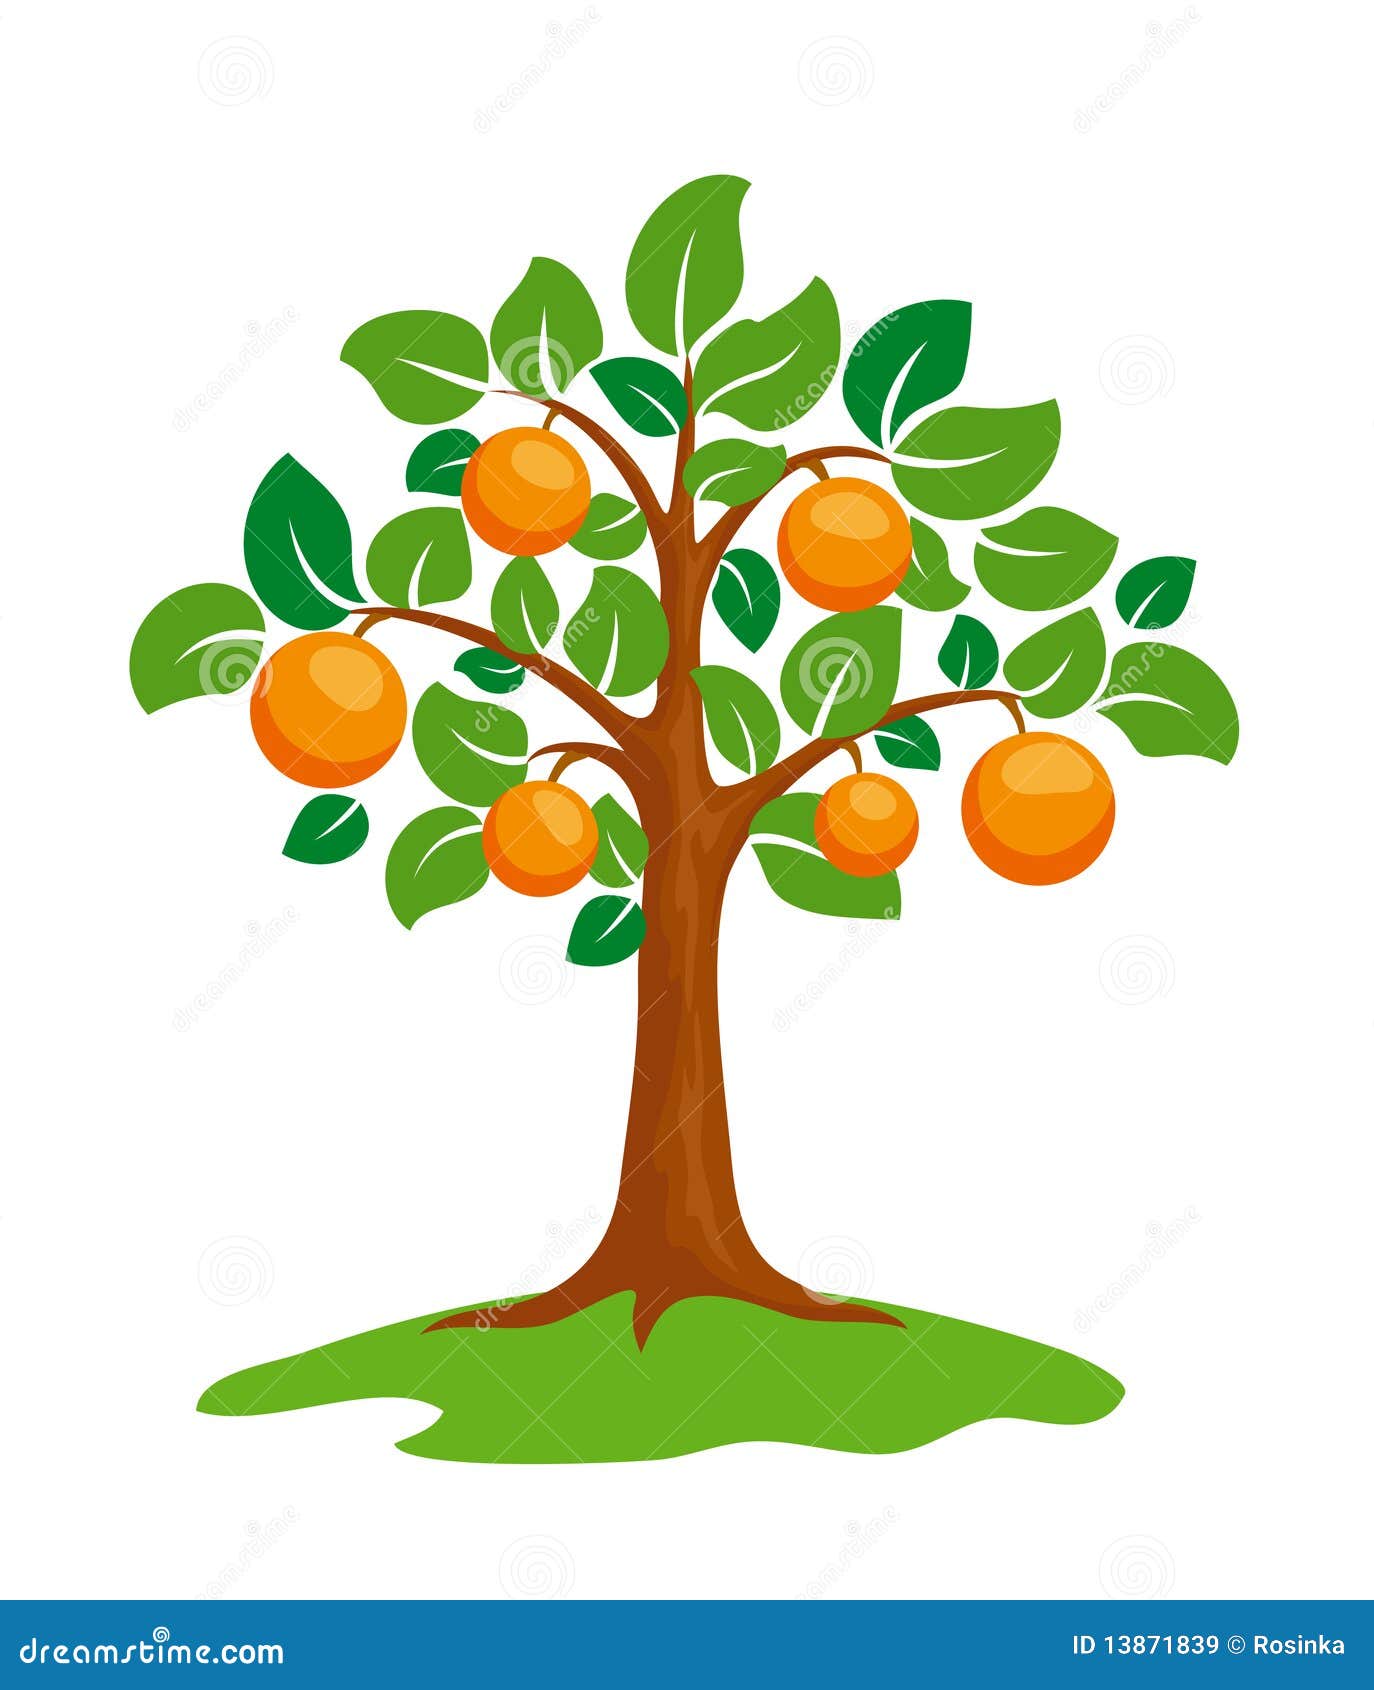 clipart orange tree - photo #15